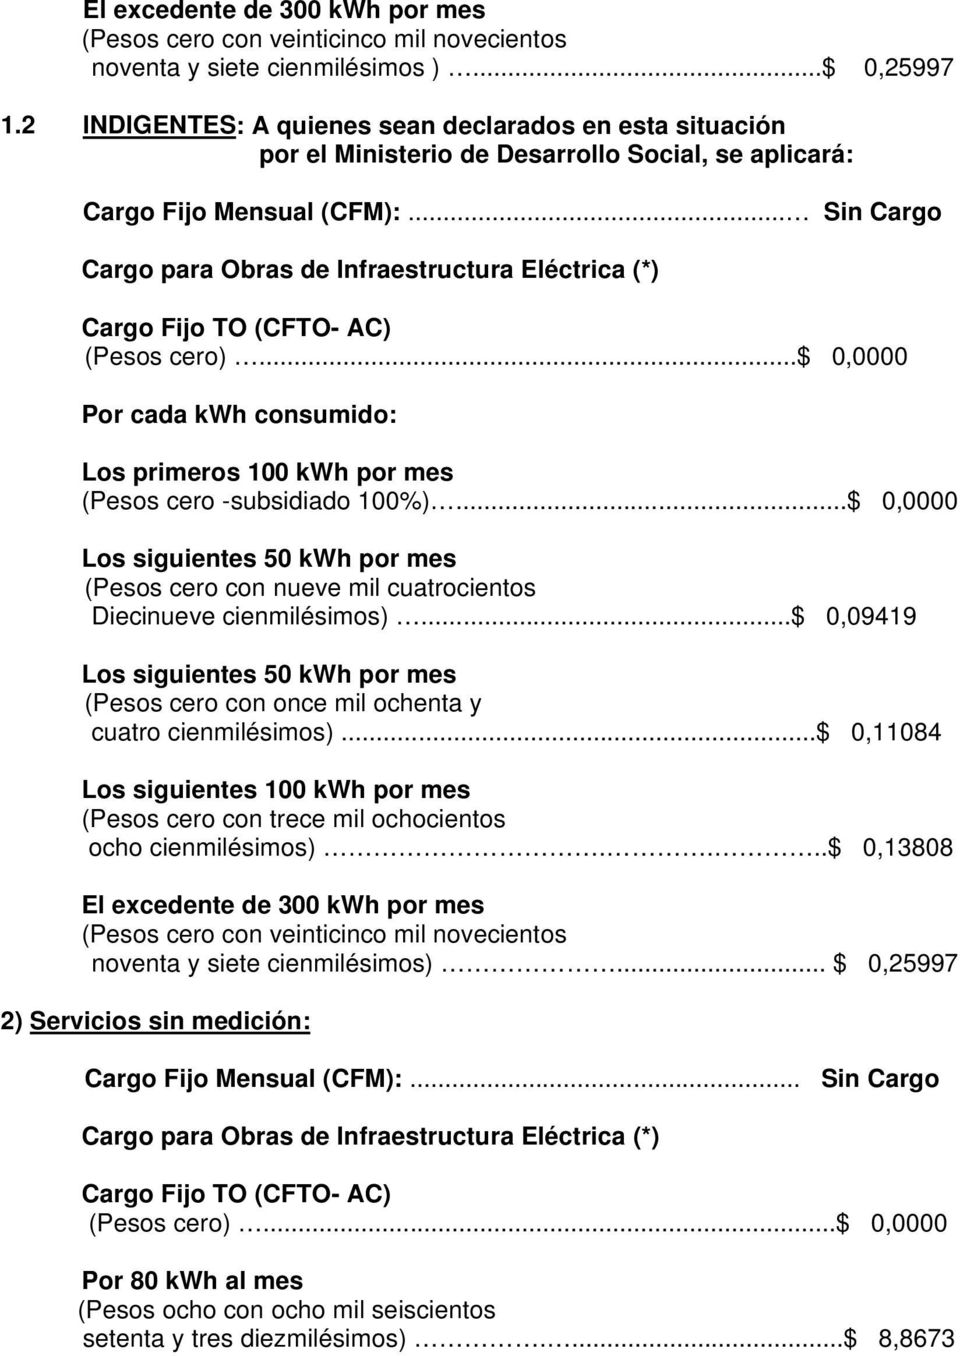 .. Sin Cargo Cargo para Obras de Infraestructura Eléctrica (*) Cargo Fijo TO (CFTO- AC) (Pesos cero)...$ 0,0000 Los primeros 100 kwh por mes (Pesos cero -subsidiado 100%).